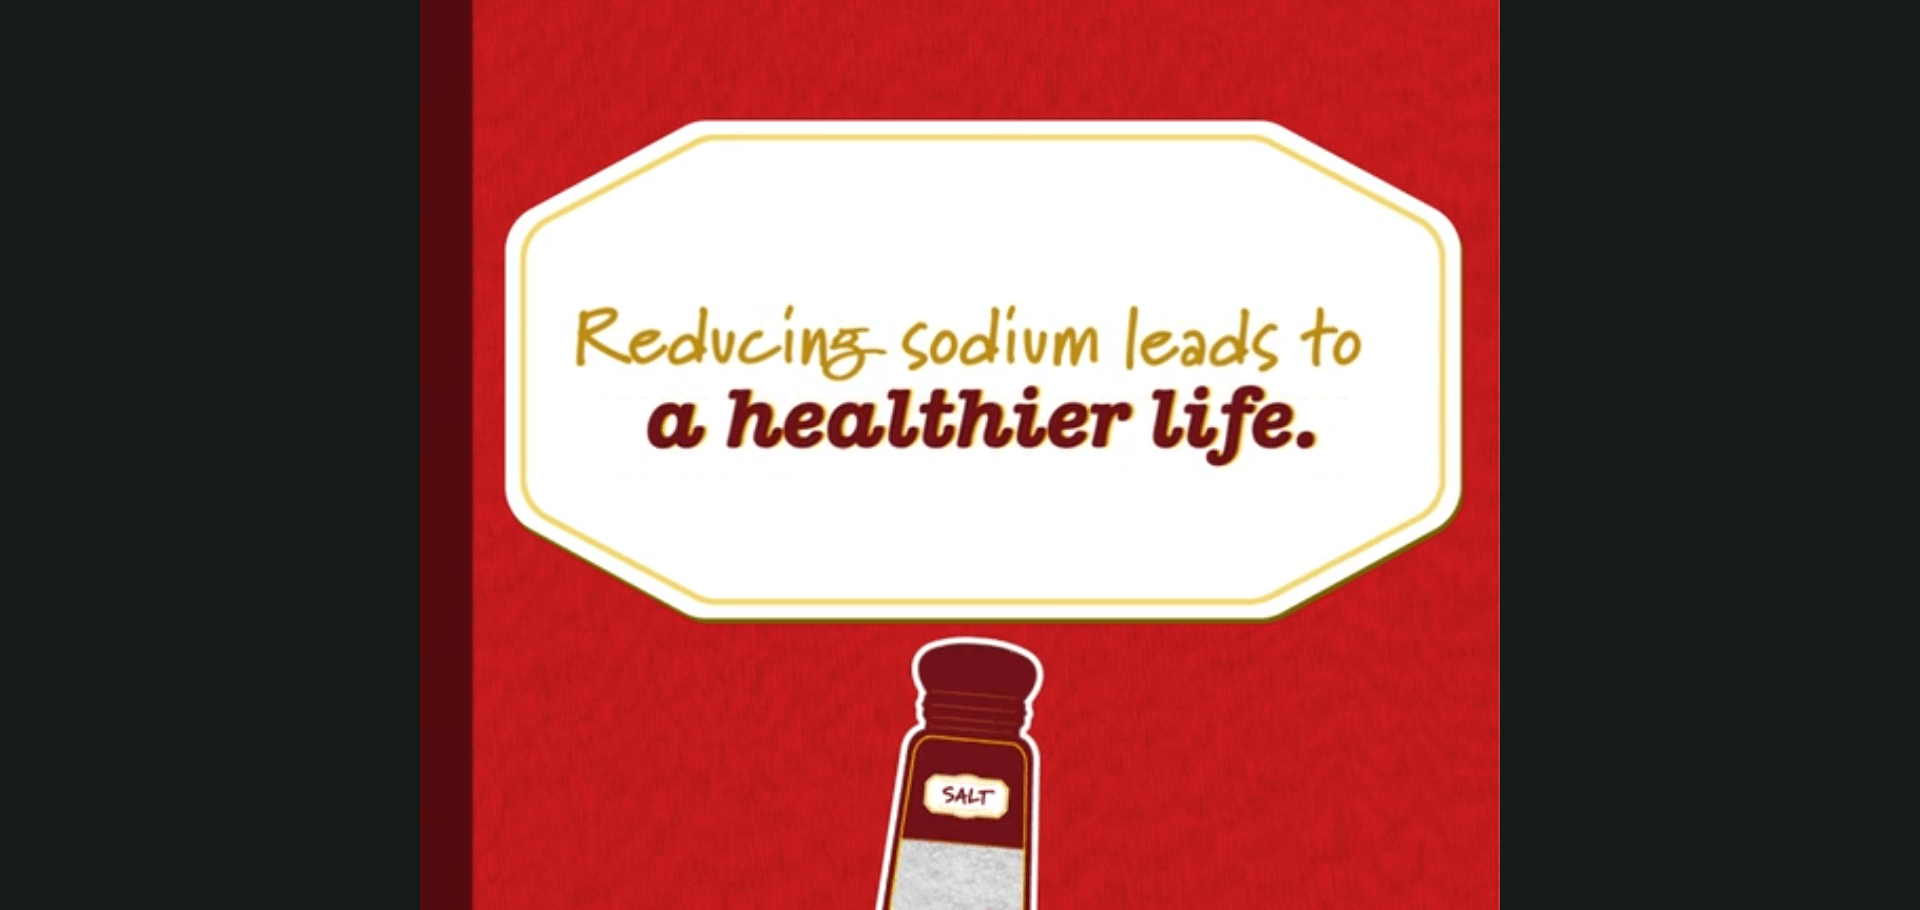 يؤدي تقليل الصوديوم إلى حياة أكثر صحة.